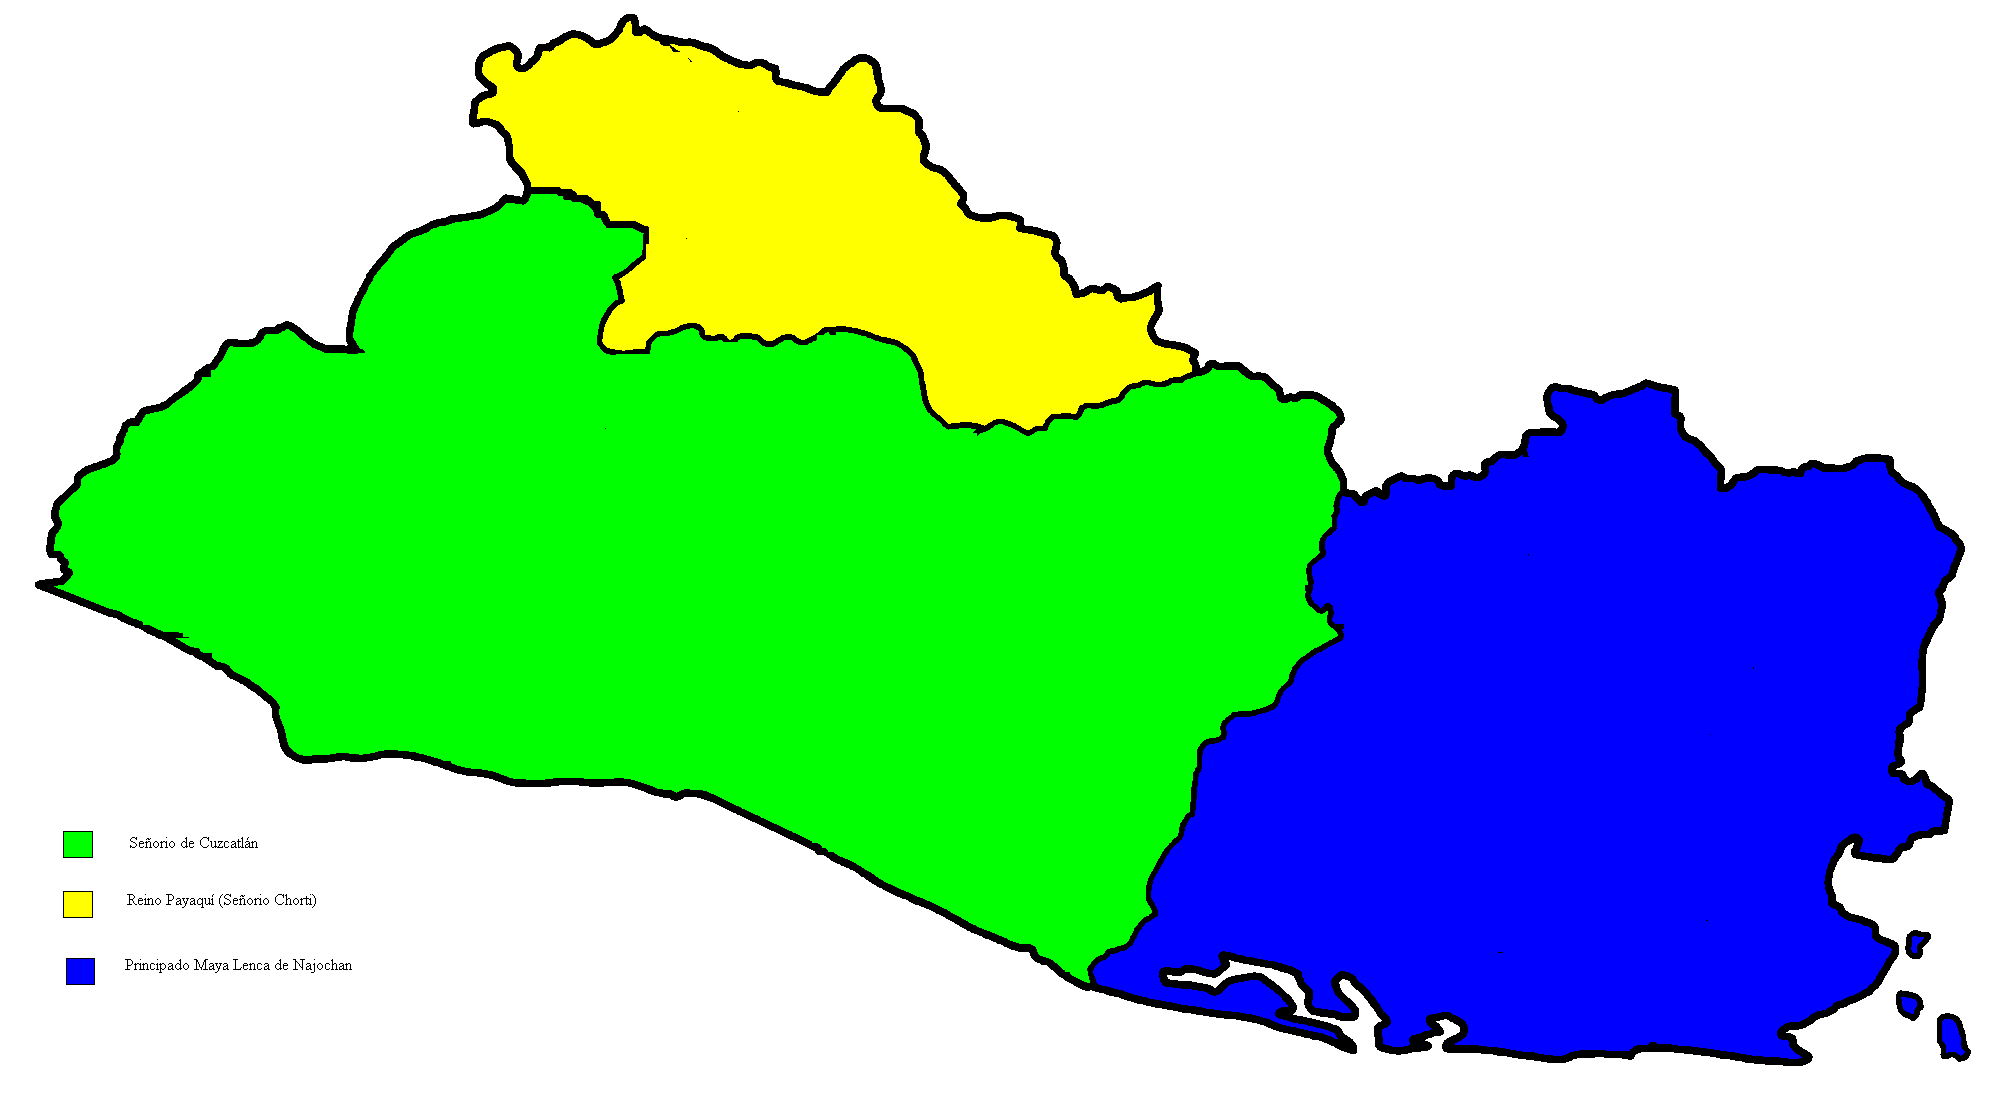 En este mapa se muestran los paises del periodo posclasico tardio que sus territorios o partes de ellos pertenecen al actual El Salvador, segun los colores de este mapa son: la de color verde es el Señorio de Cuzcatlan, la de color amarillo es el Reino Payaquí (Señorio Chorti) y la area de color azul es el Reino Lenca (llamado tredicionalmente Chaparrastique)